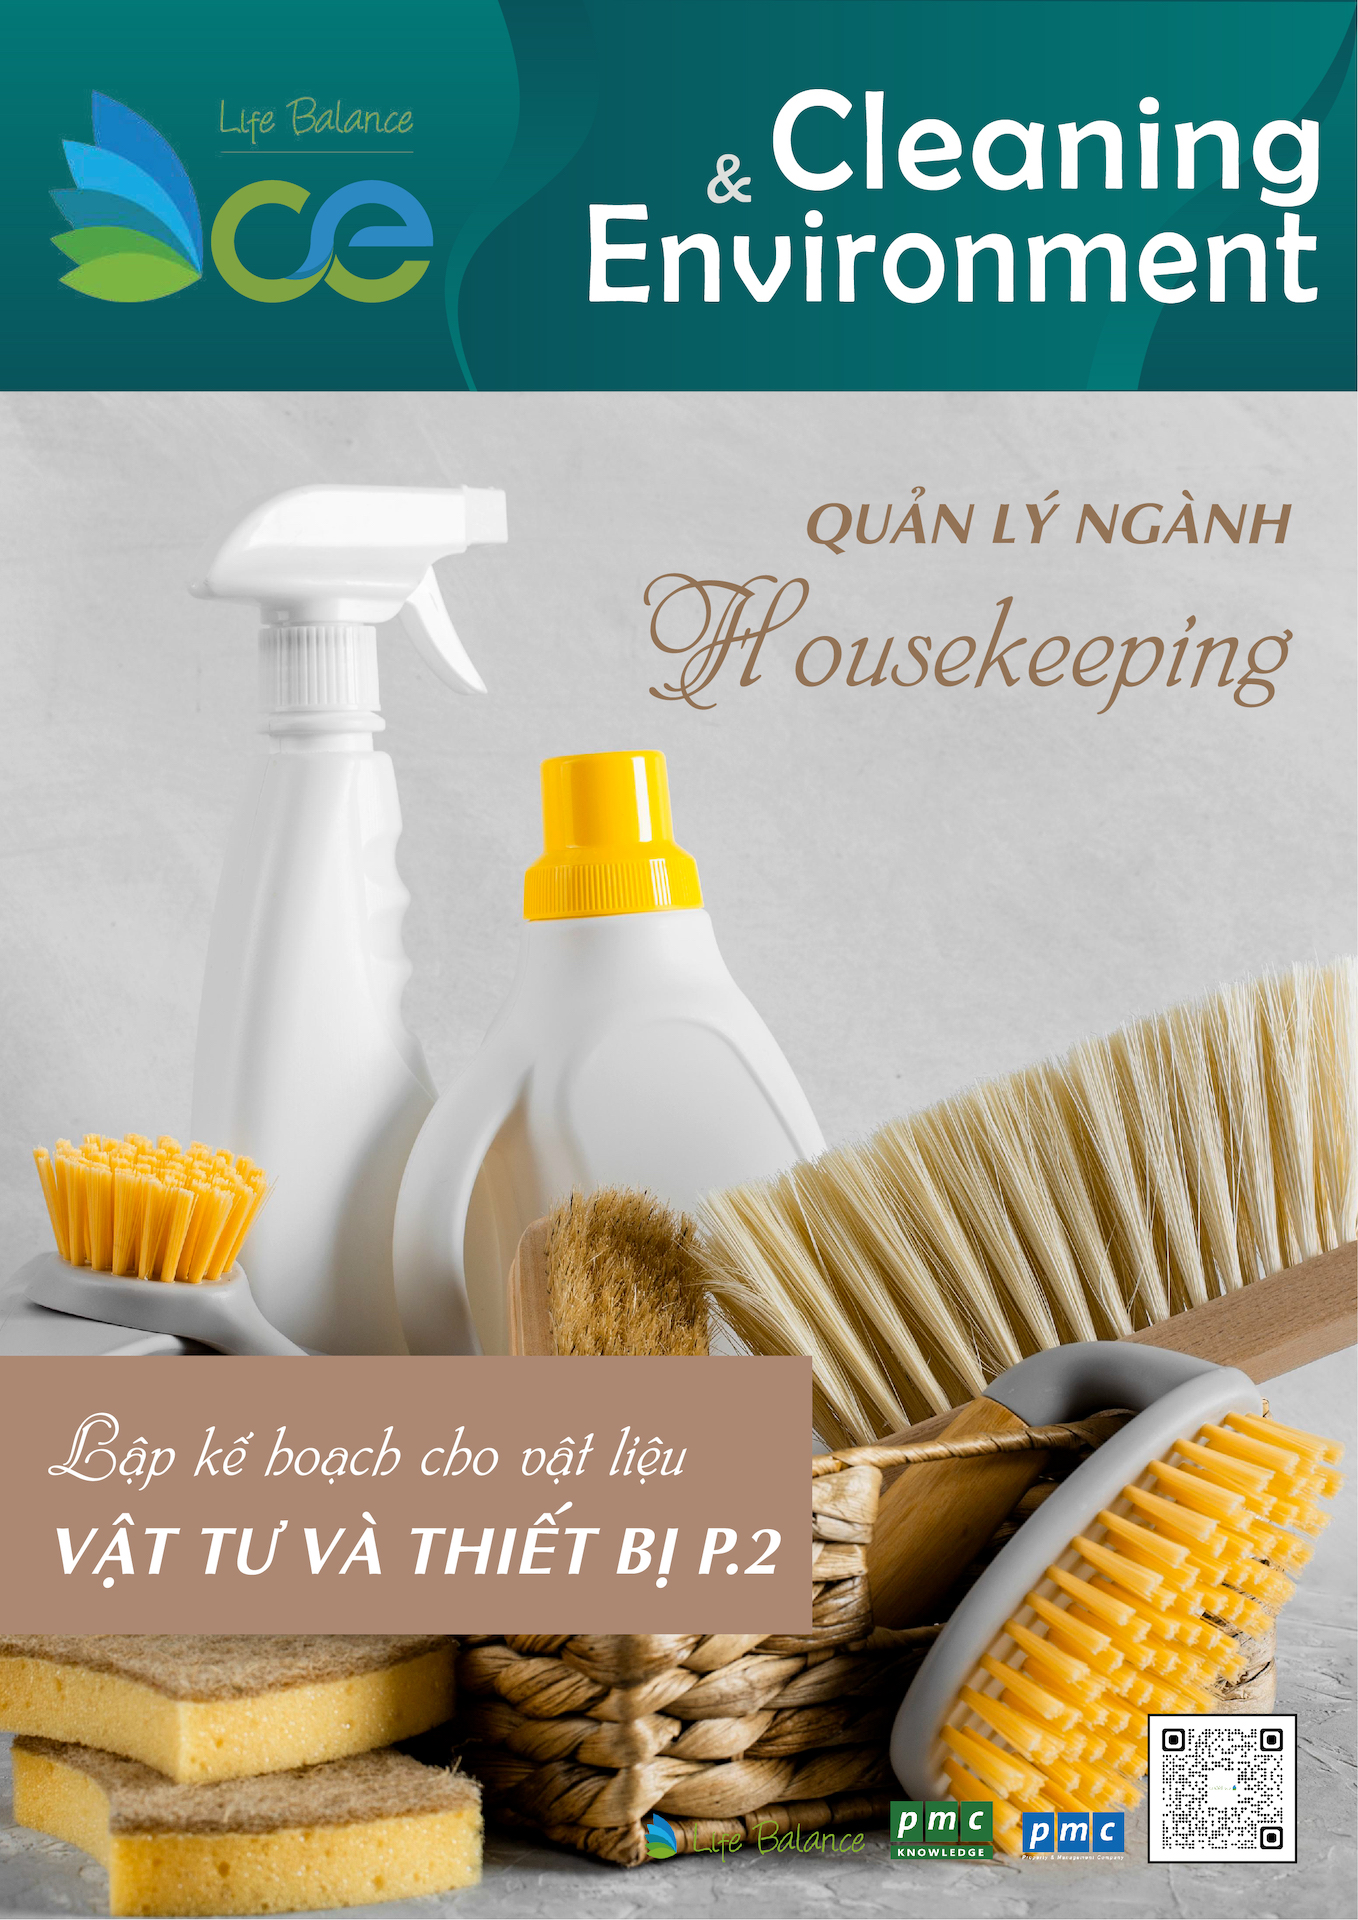 Tạp chí CLEANING & ENVIRONMENT | Life Balance – No.30 Quản lý ngành Houskeeping P.8